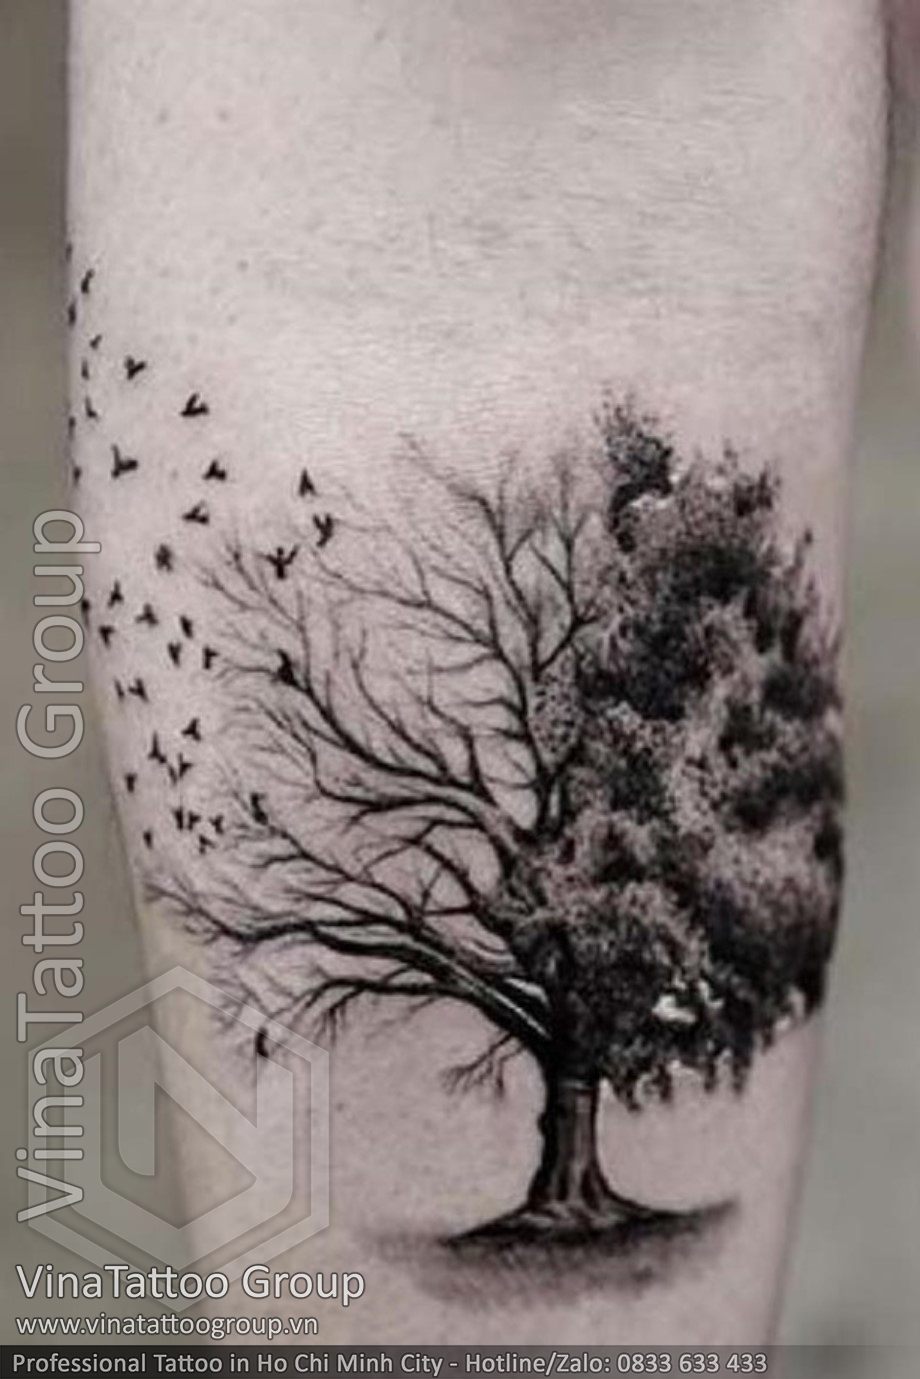 Hình xăm cây thông có ý nghĩa  Đỗ Nhân Tattoo Studio  Facebook